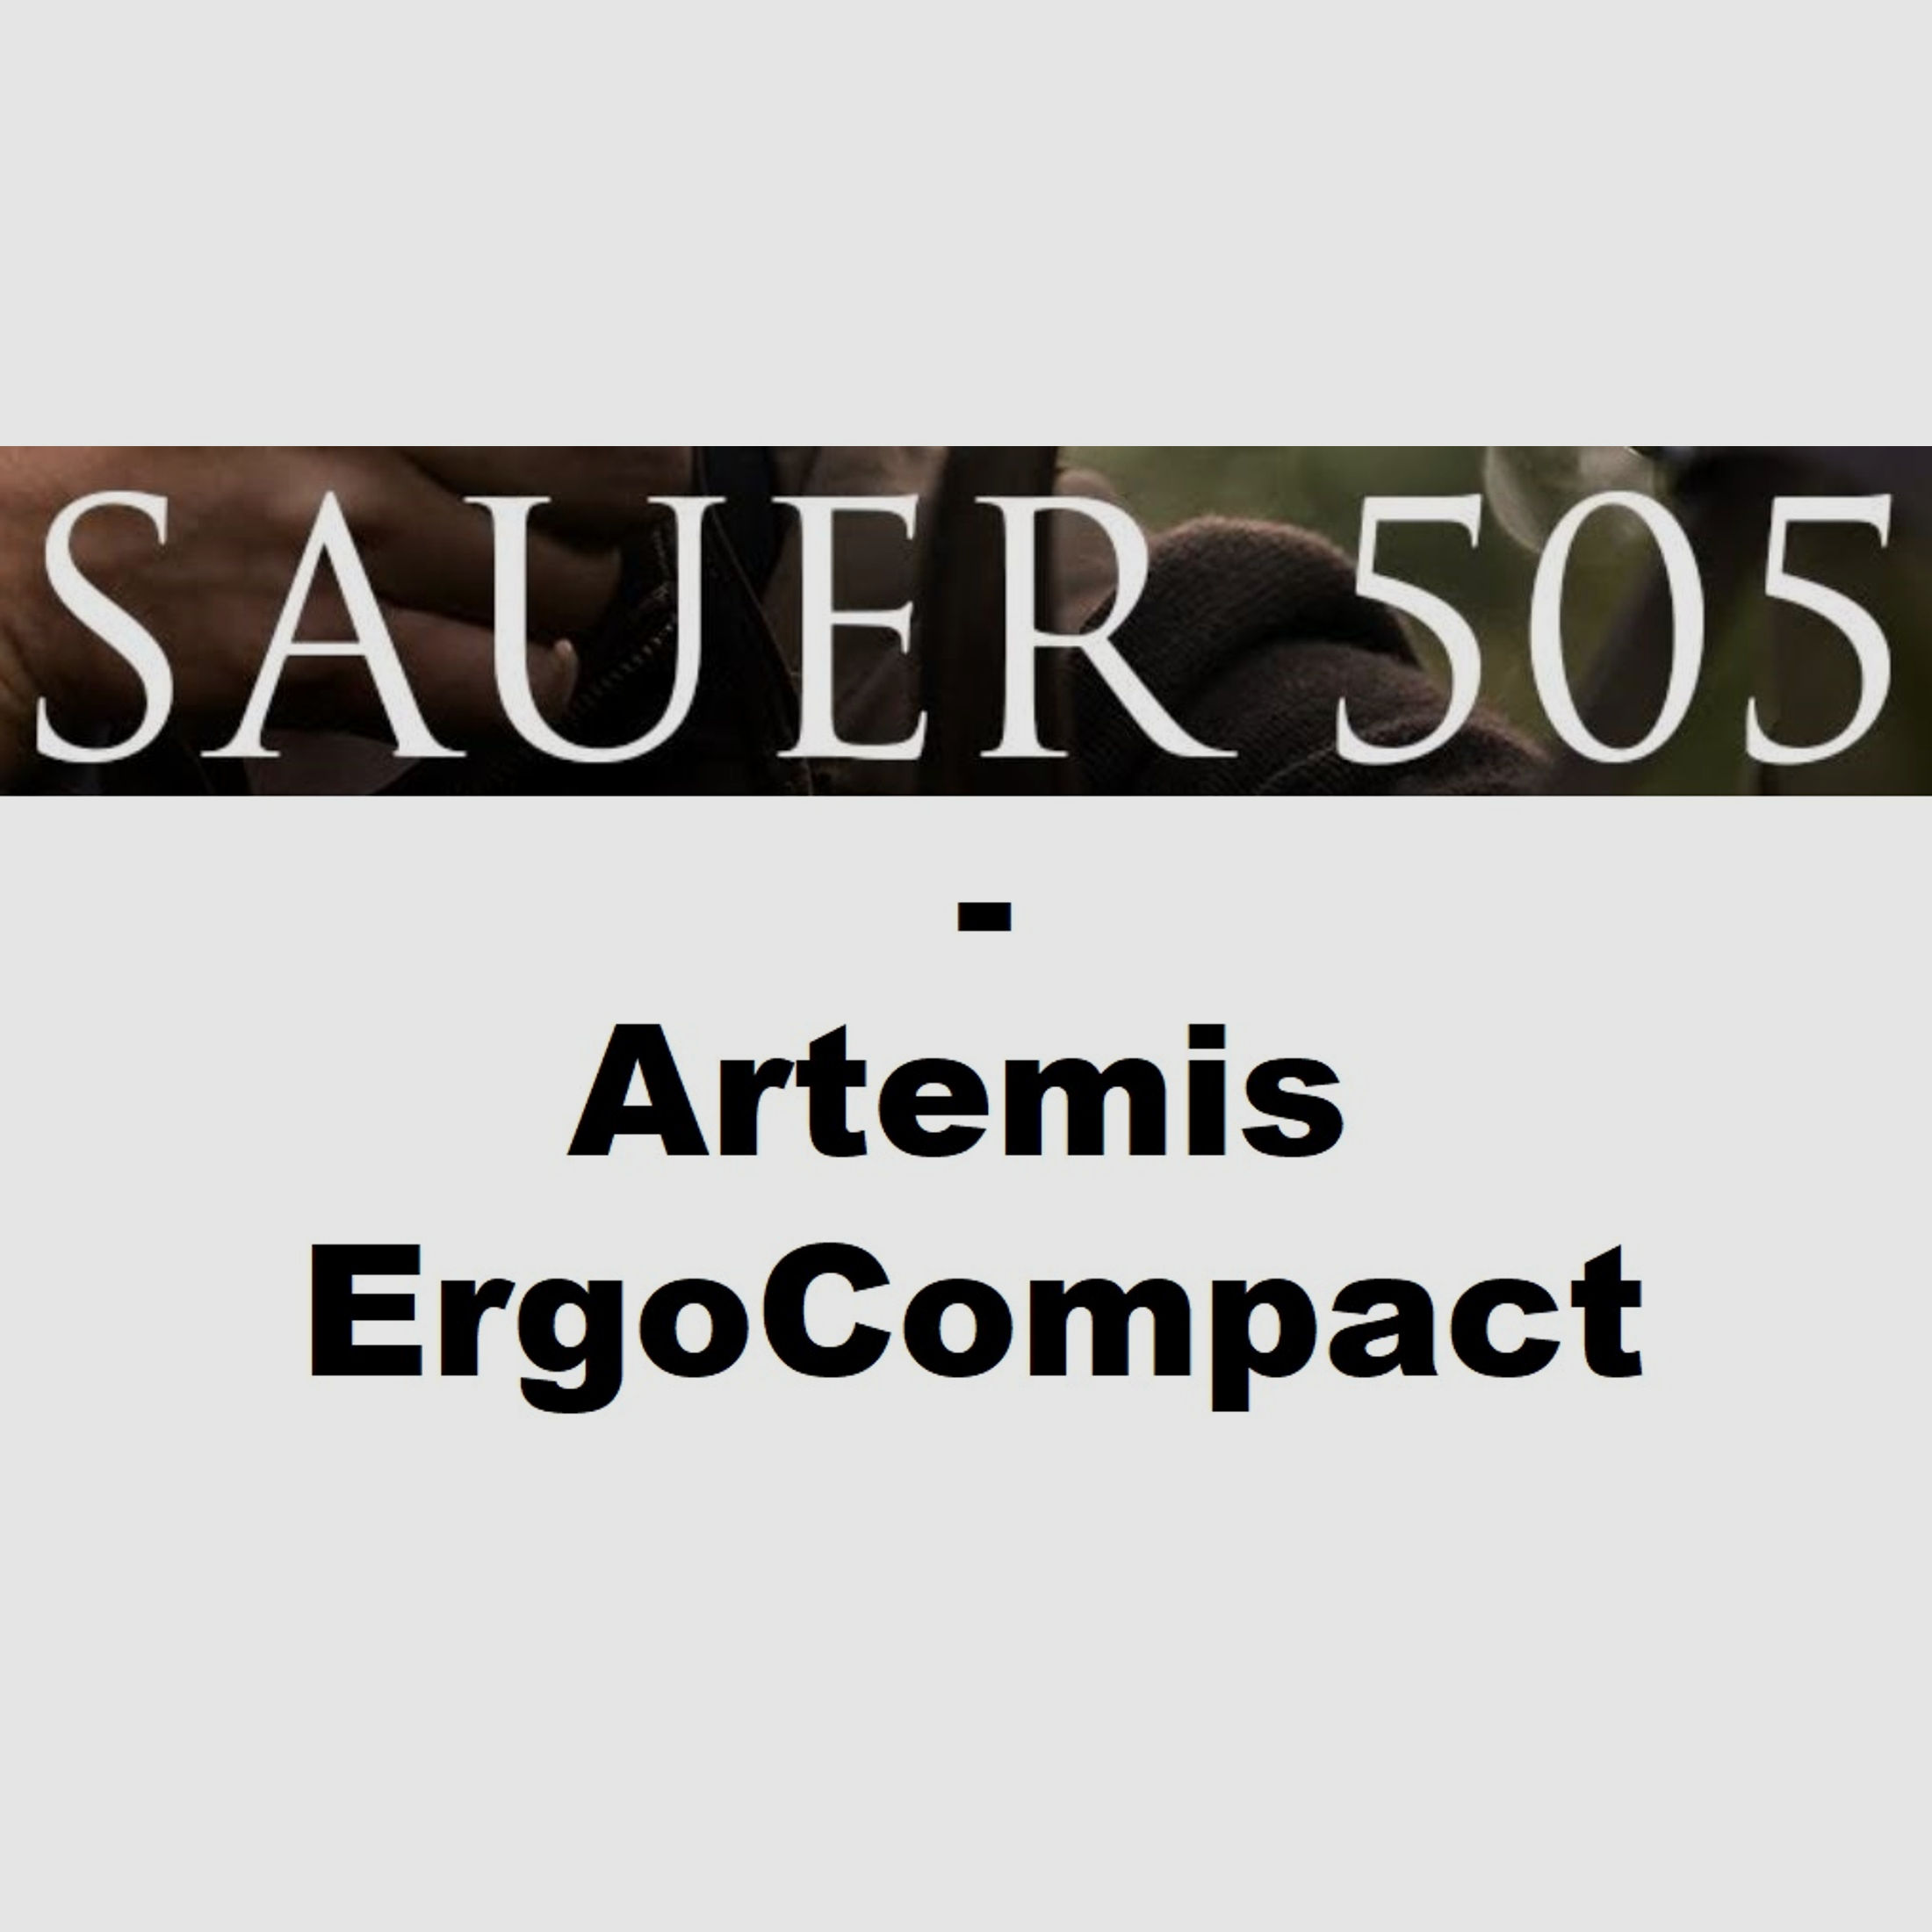 Sauer 505 Artemis ErgoCompact Repetierbüchse